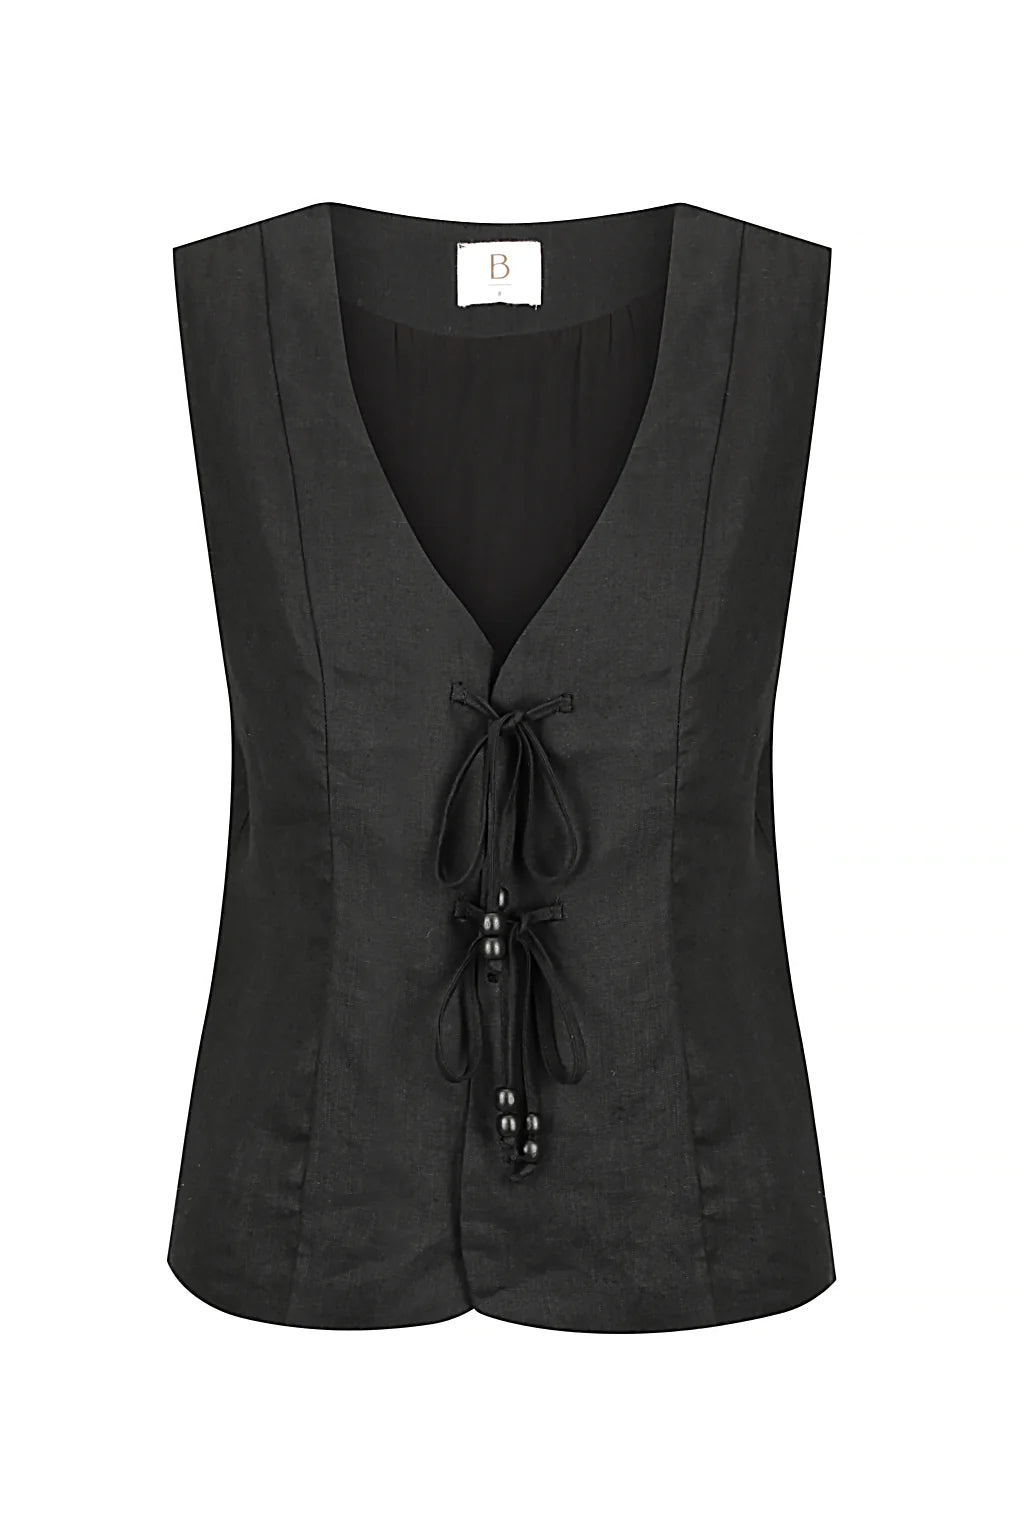 BISK the Label - Black Linen Tie Vest